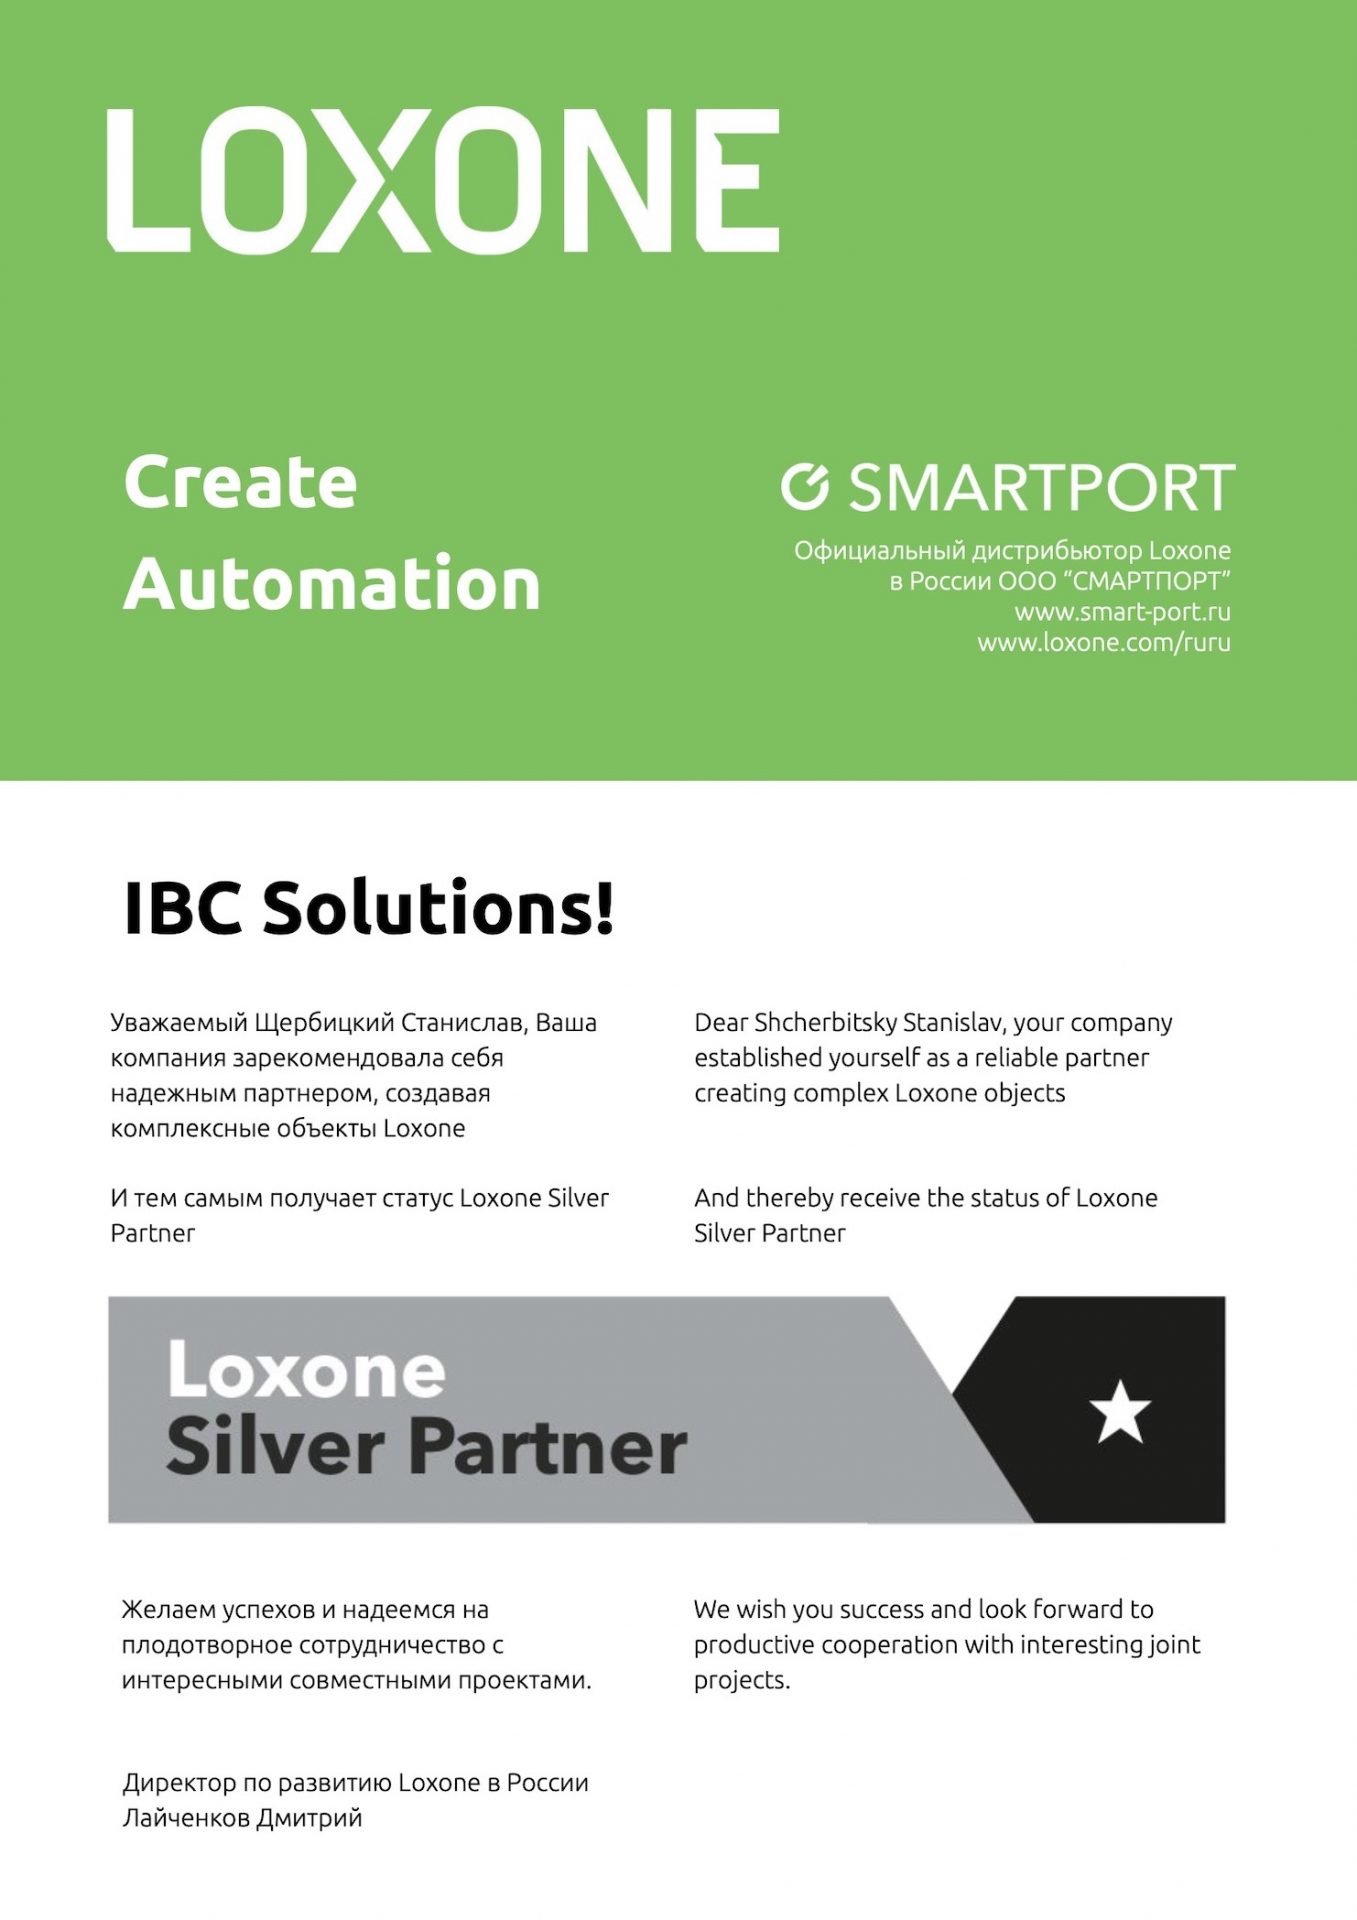 IBC Solutions серебряный партнер компании Loxone